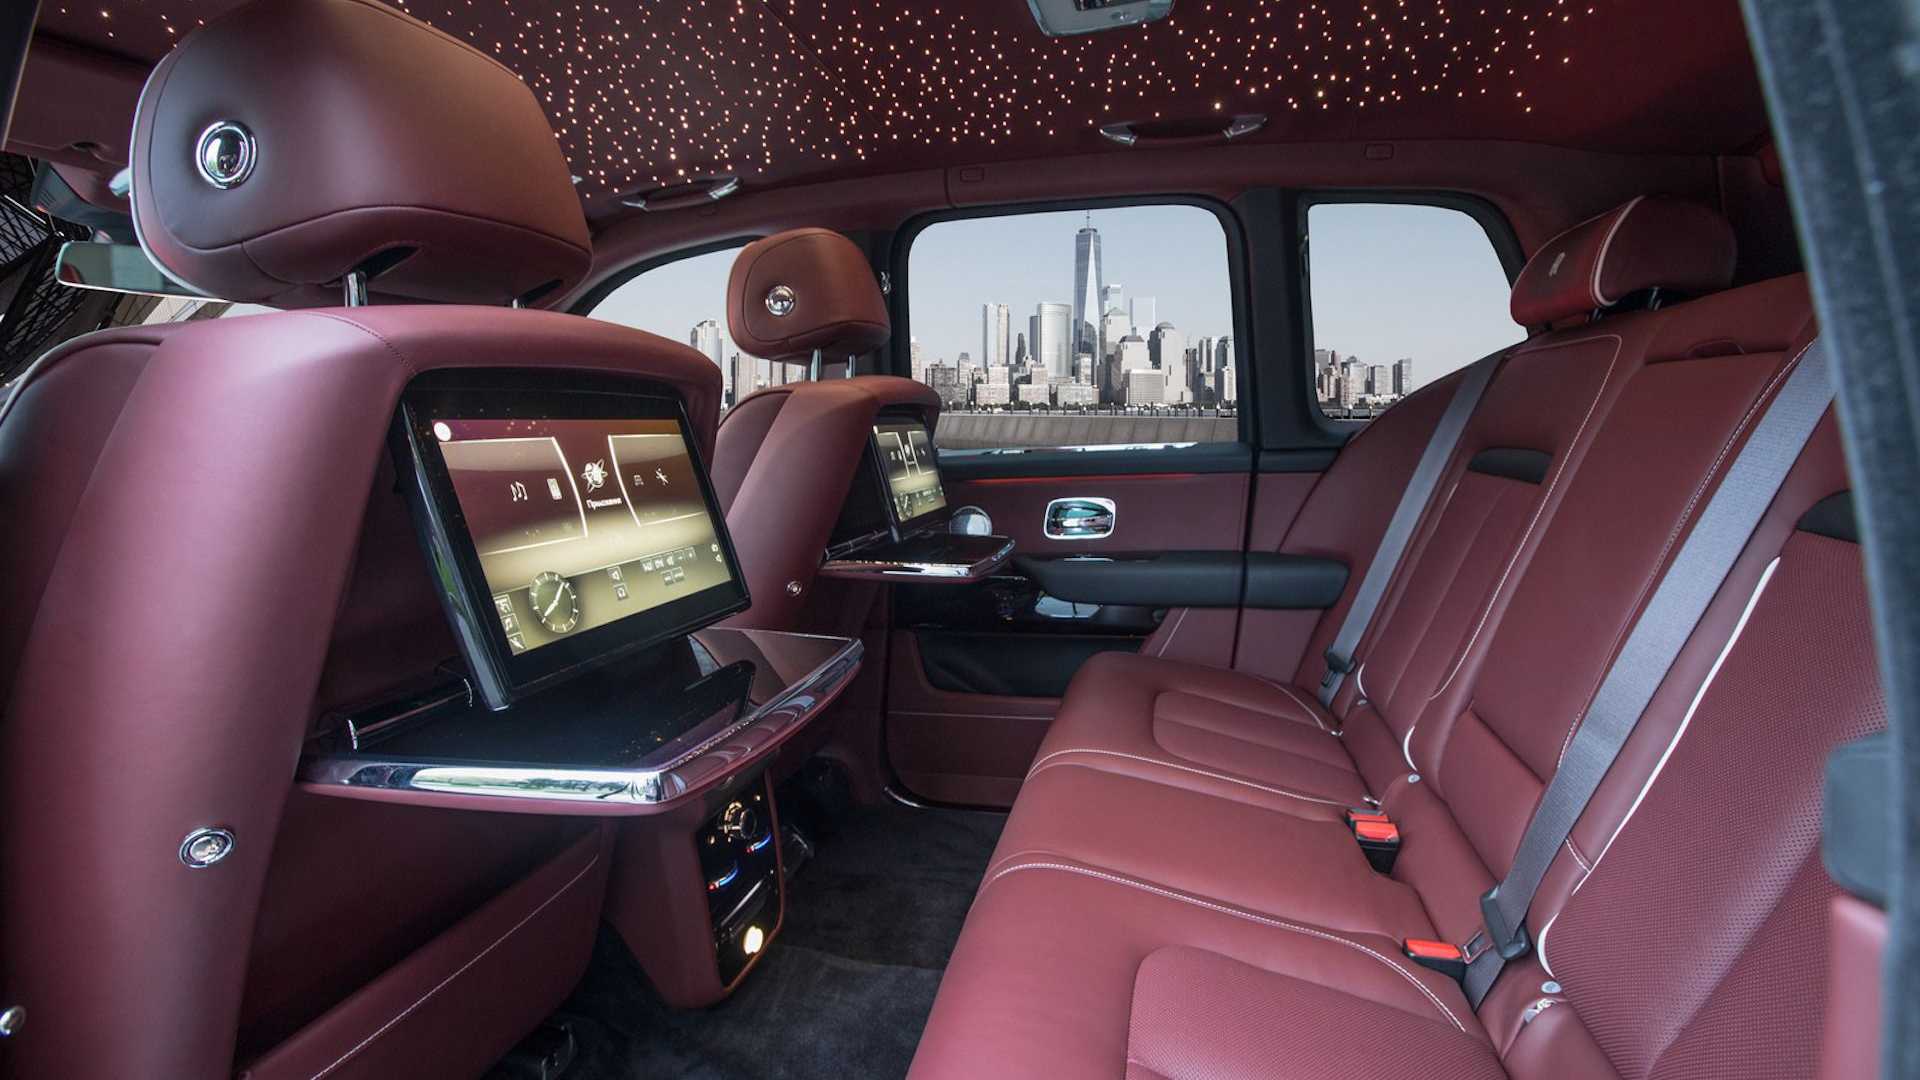 Броневик за миллион долларов: представлен бронированный внедорожник Rolls-Royce Cullinan